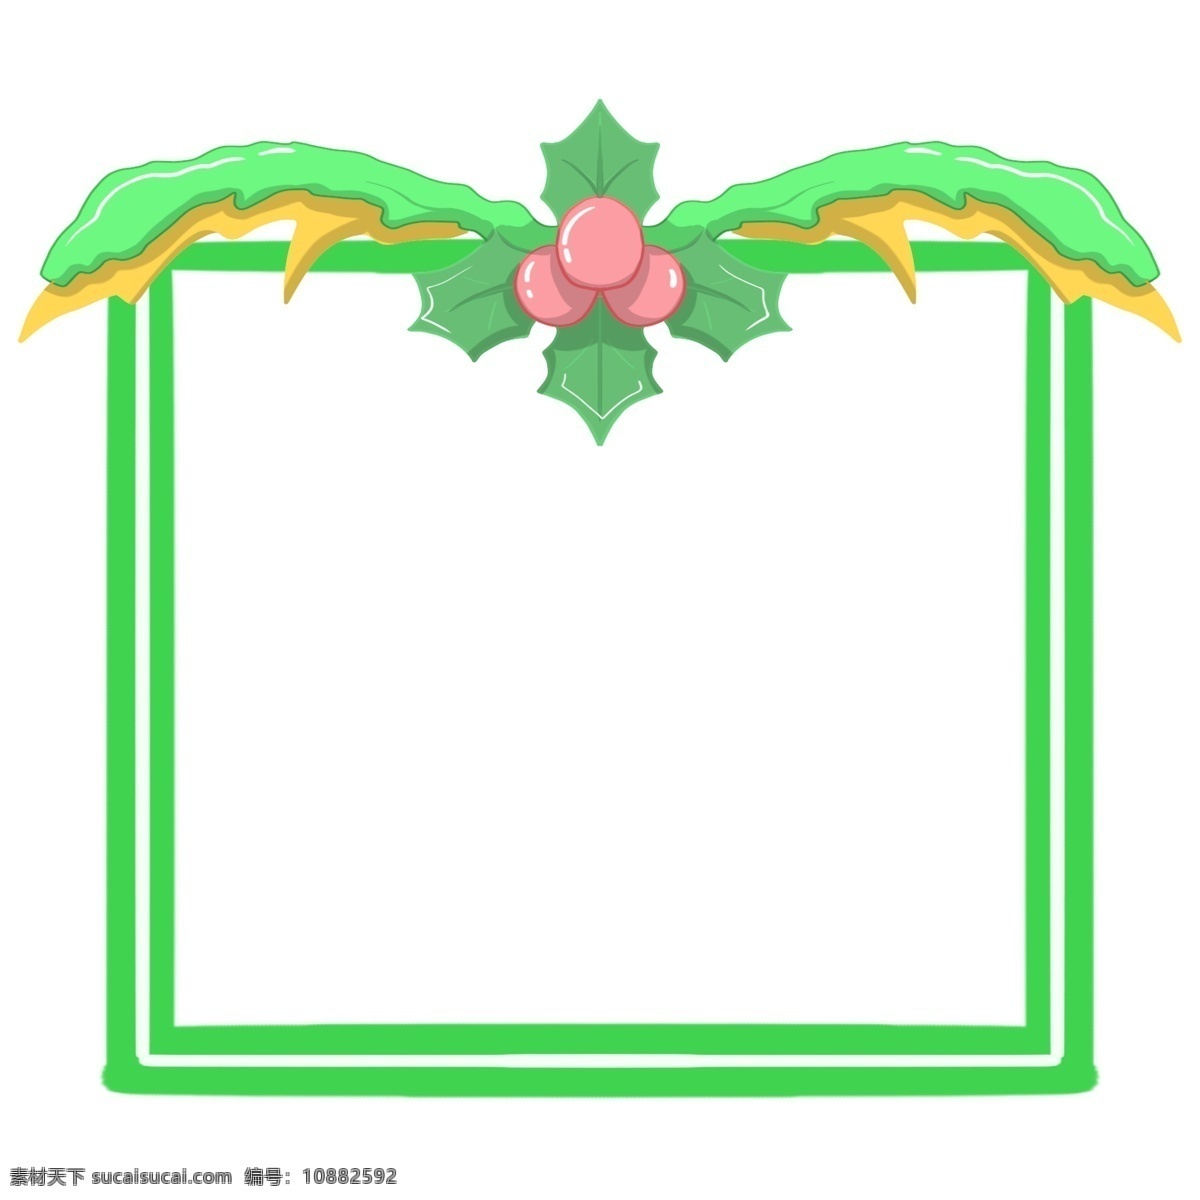 圣诞节 圣诞球 边框 绿色的边框 唯美边框 绿色的叶子 漂亮的边框 手绘 红色的圣诞球